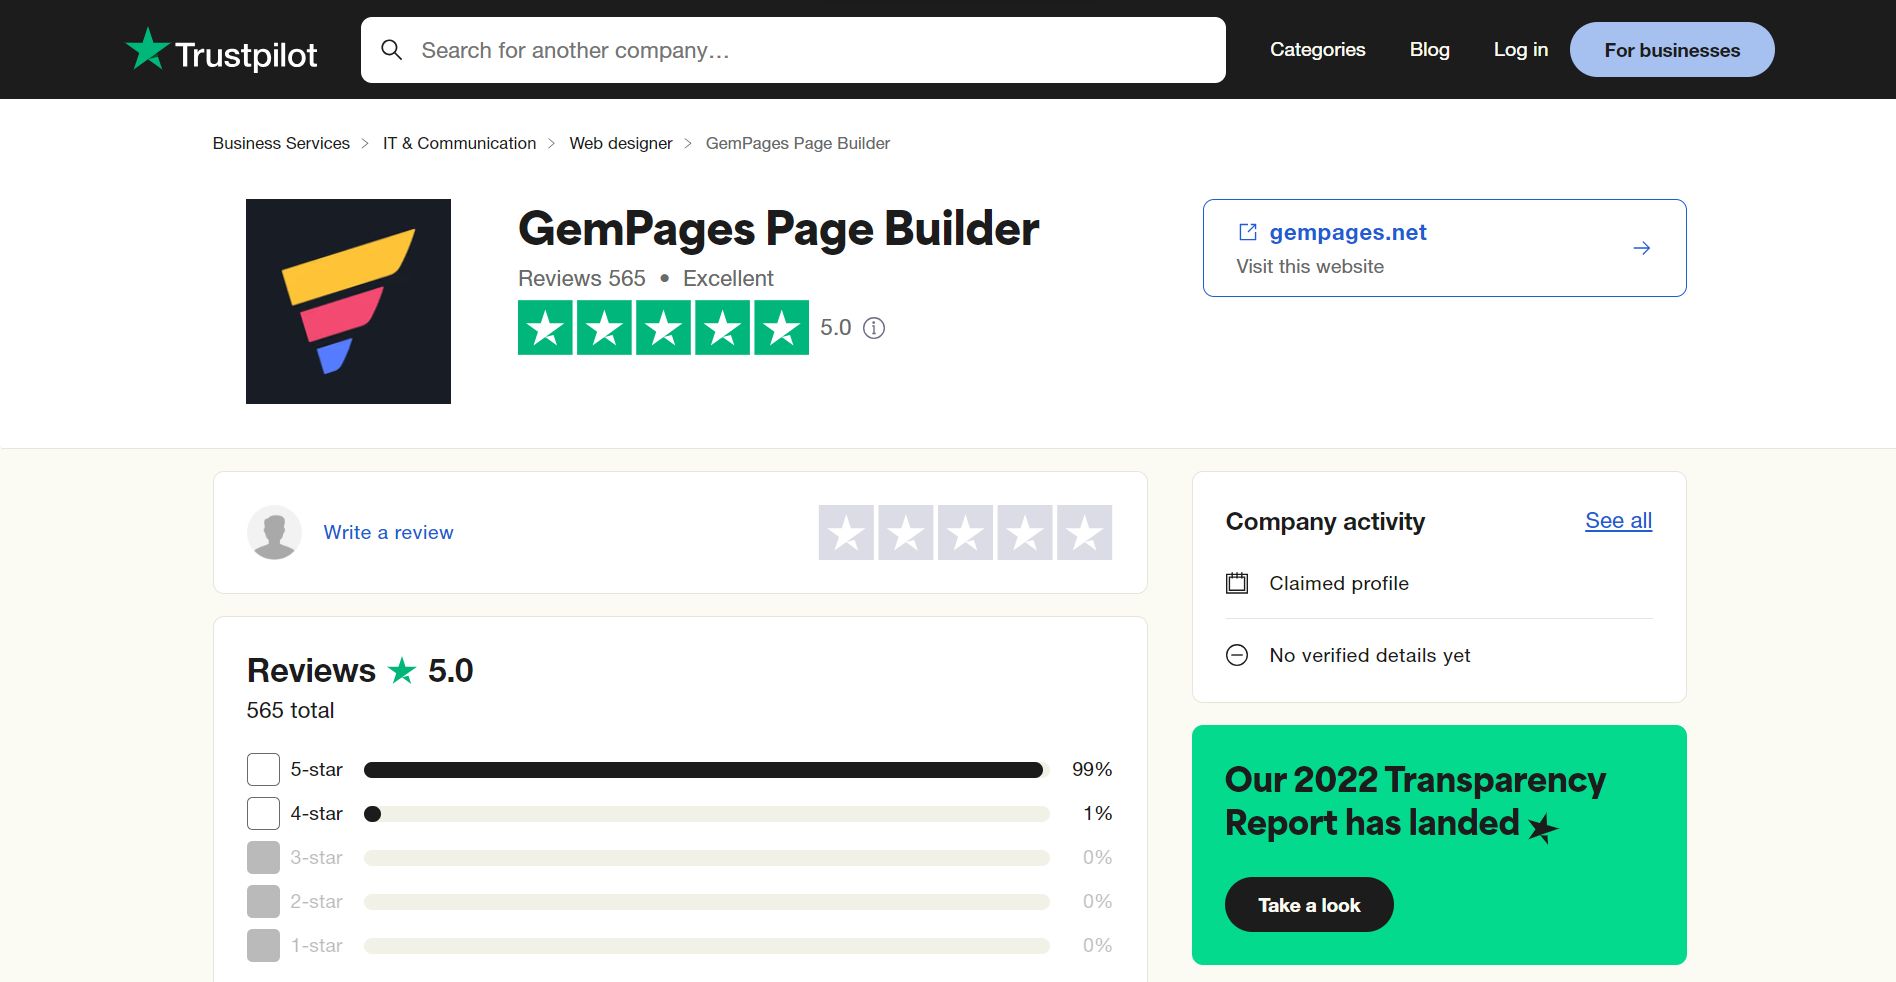 GemPages’ rating on Trustpilot